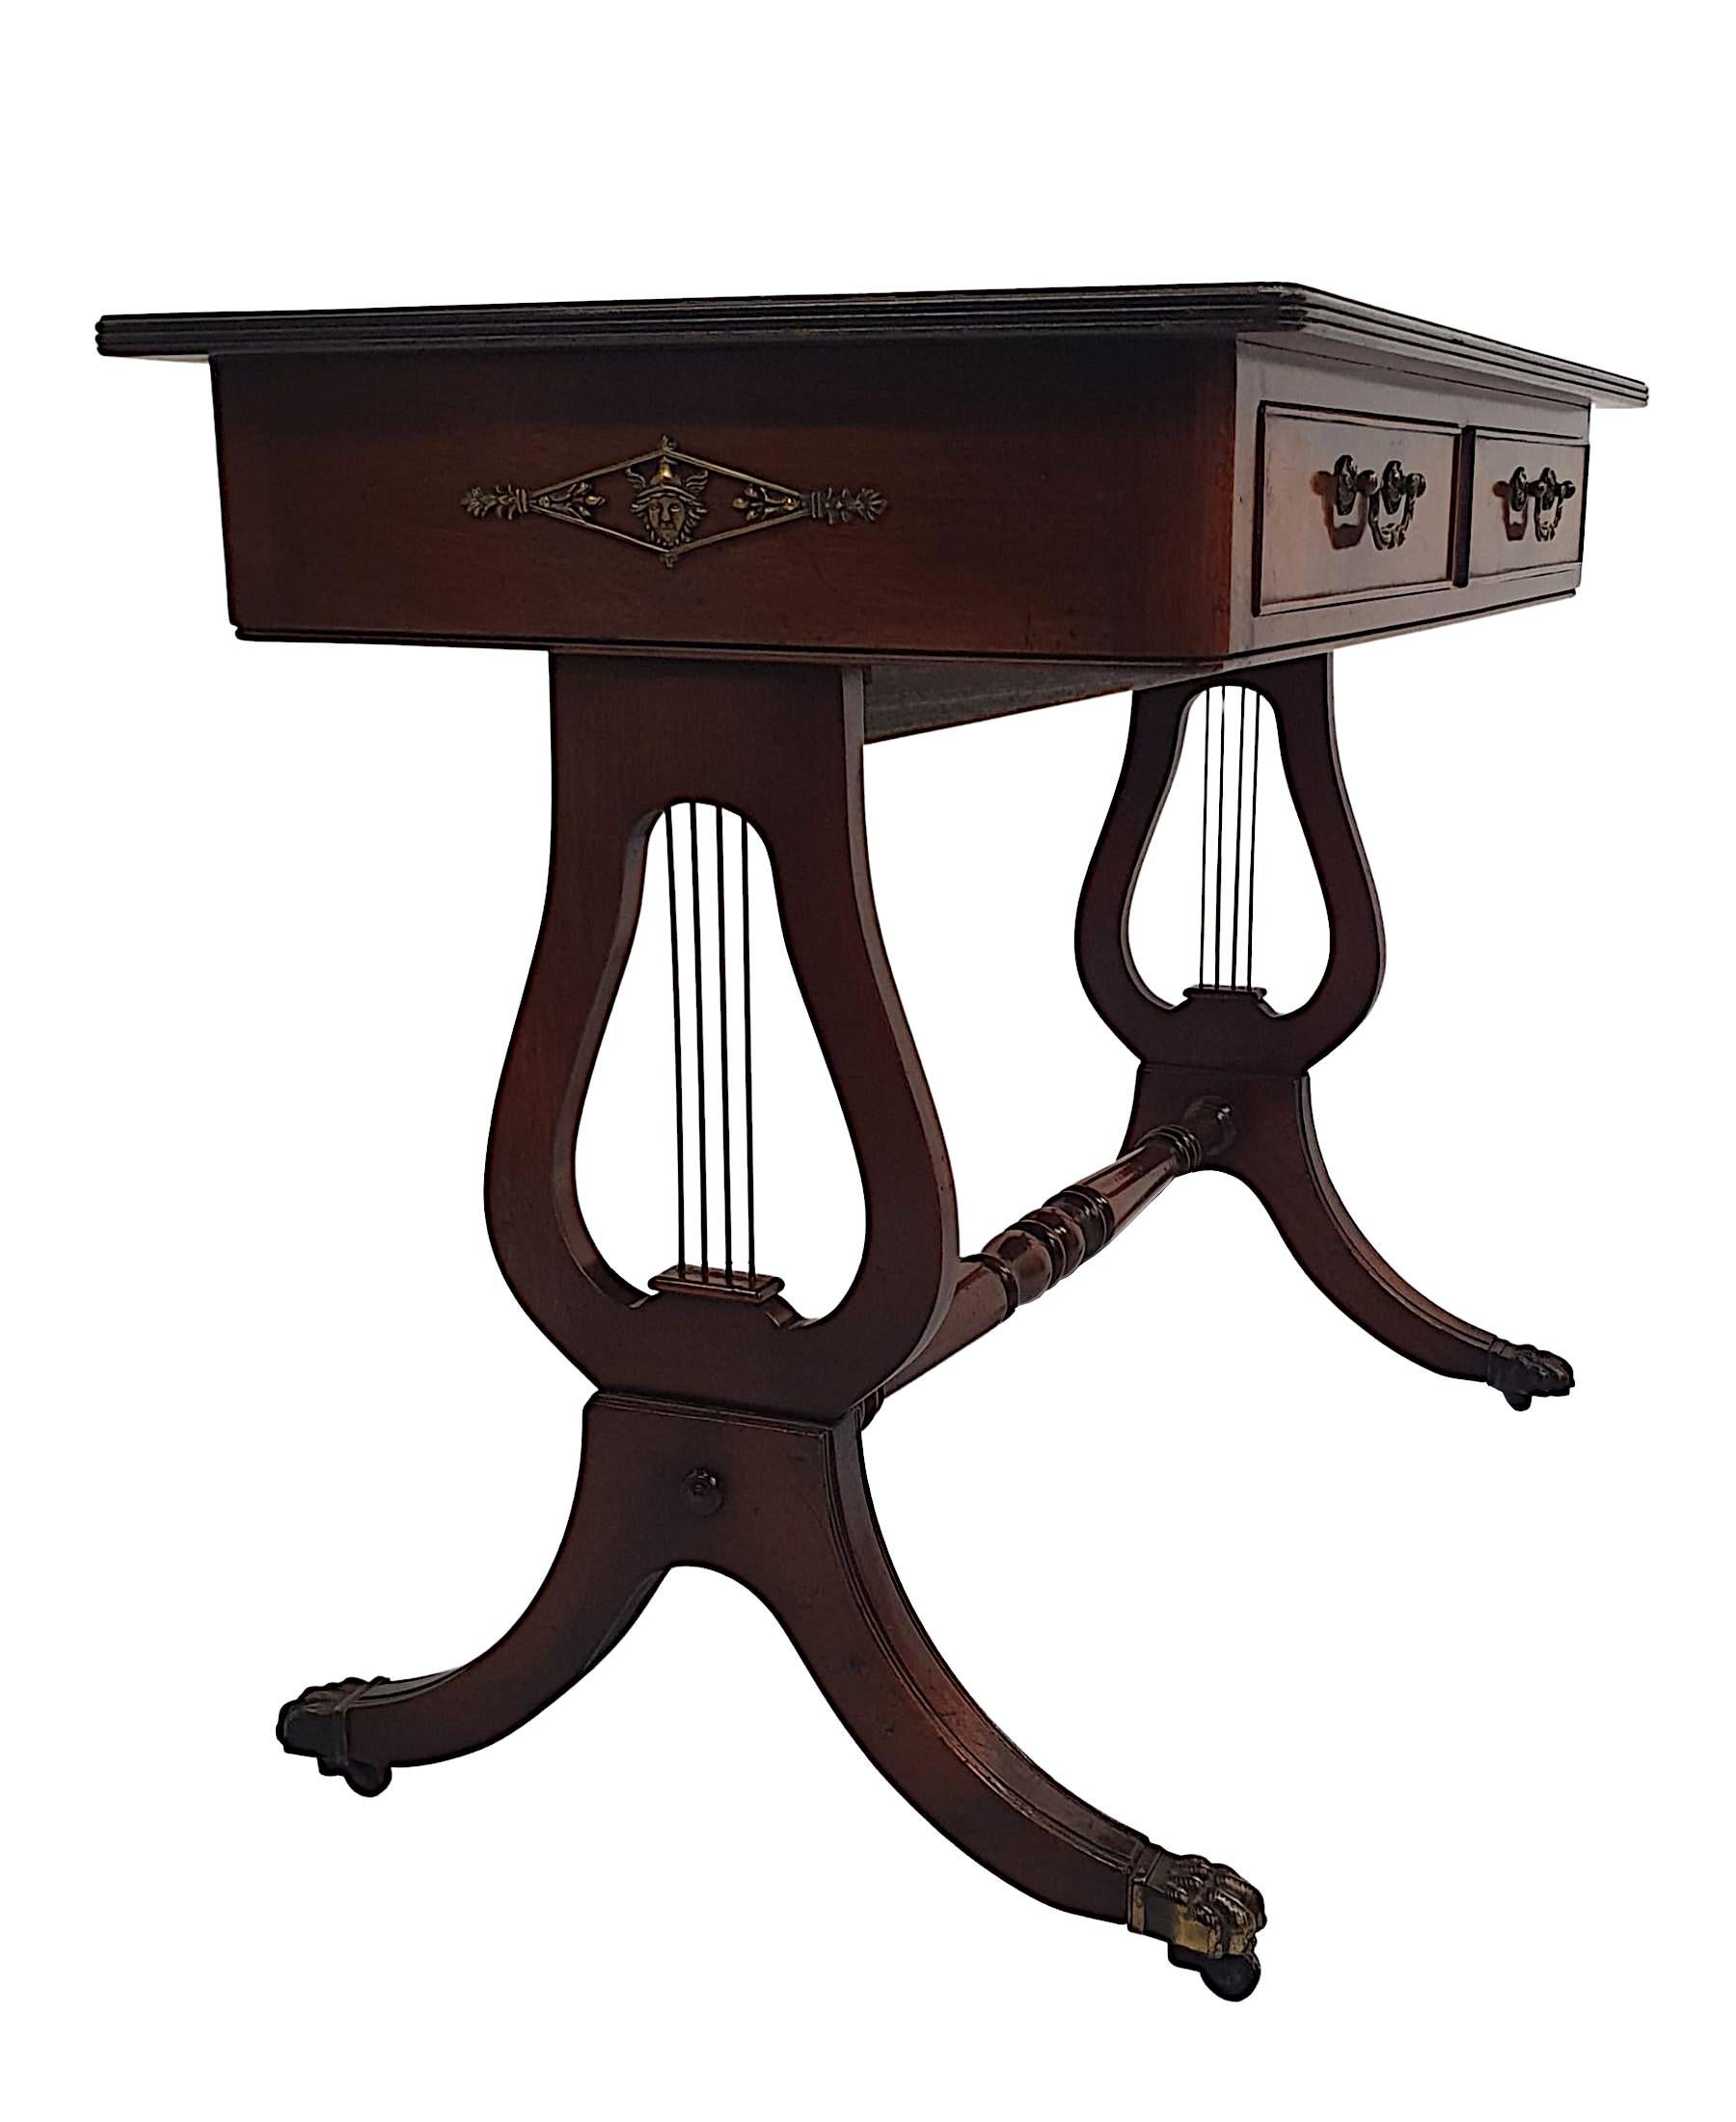 Très belle table de bureau ou de canapé en acajou des années 1920, finement sculptée et d'une qualité fabuleuse, avec une riche patine et un grain fin.  Le plateau mouluré à bord cannelé de forme rectangulaire est équipé d'une magnifique surface